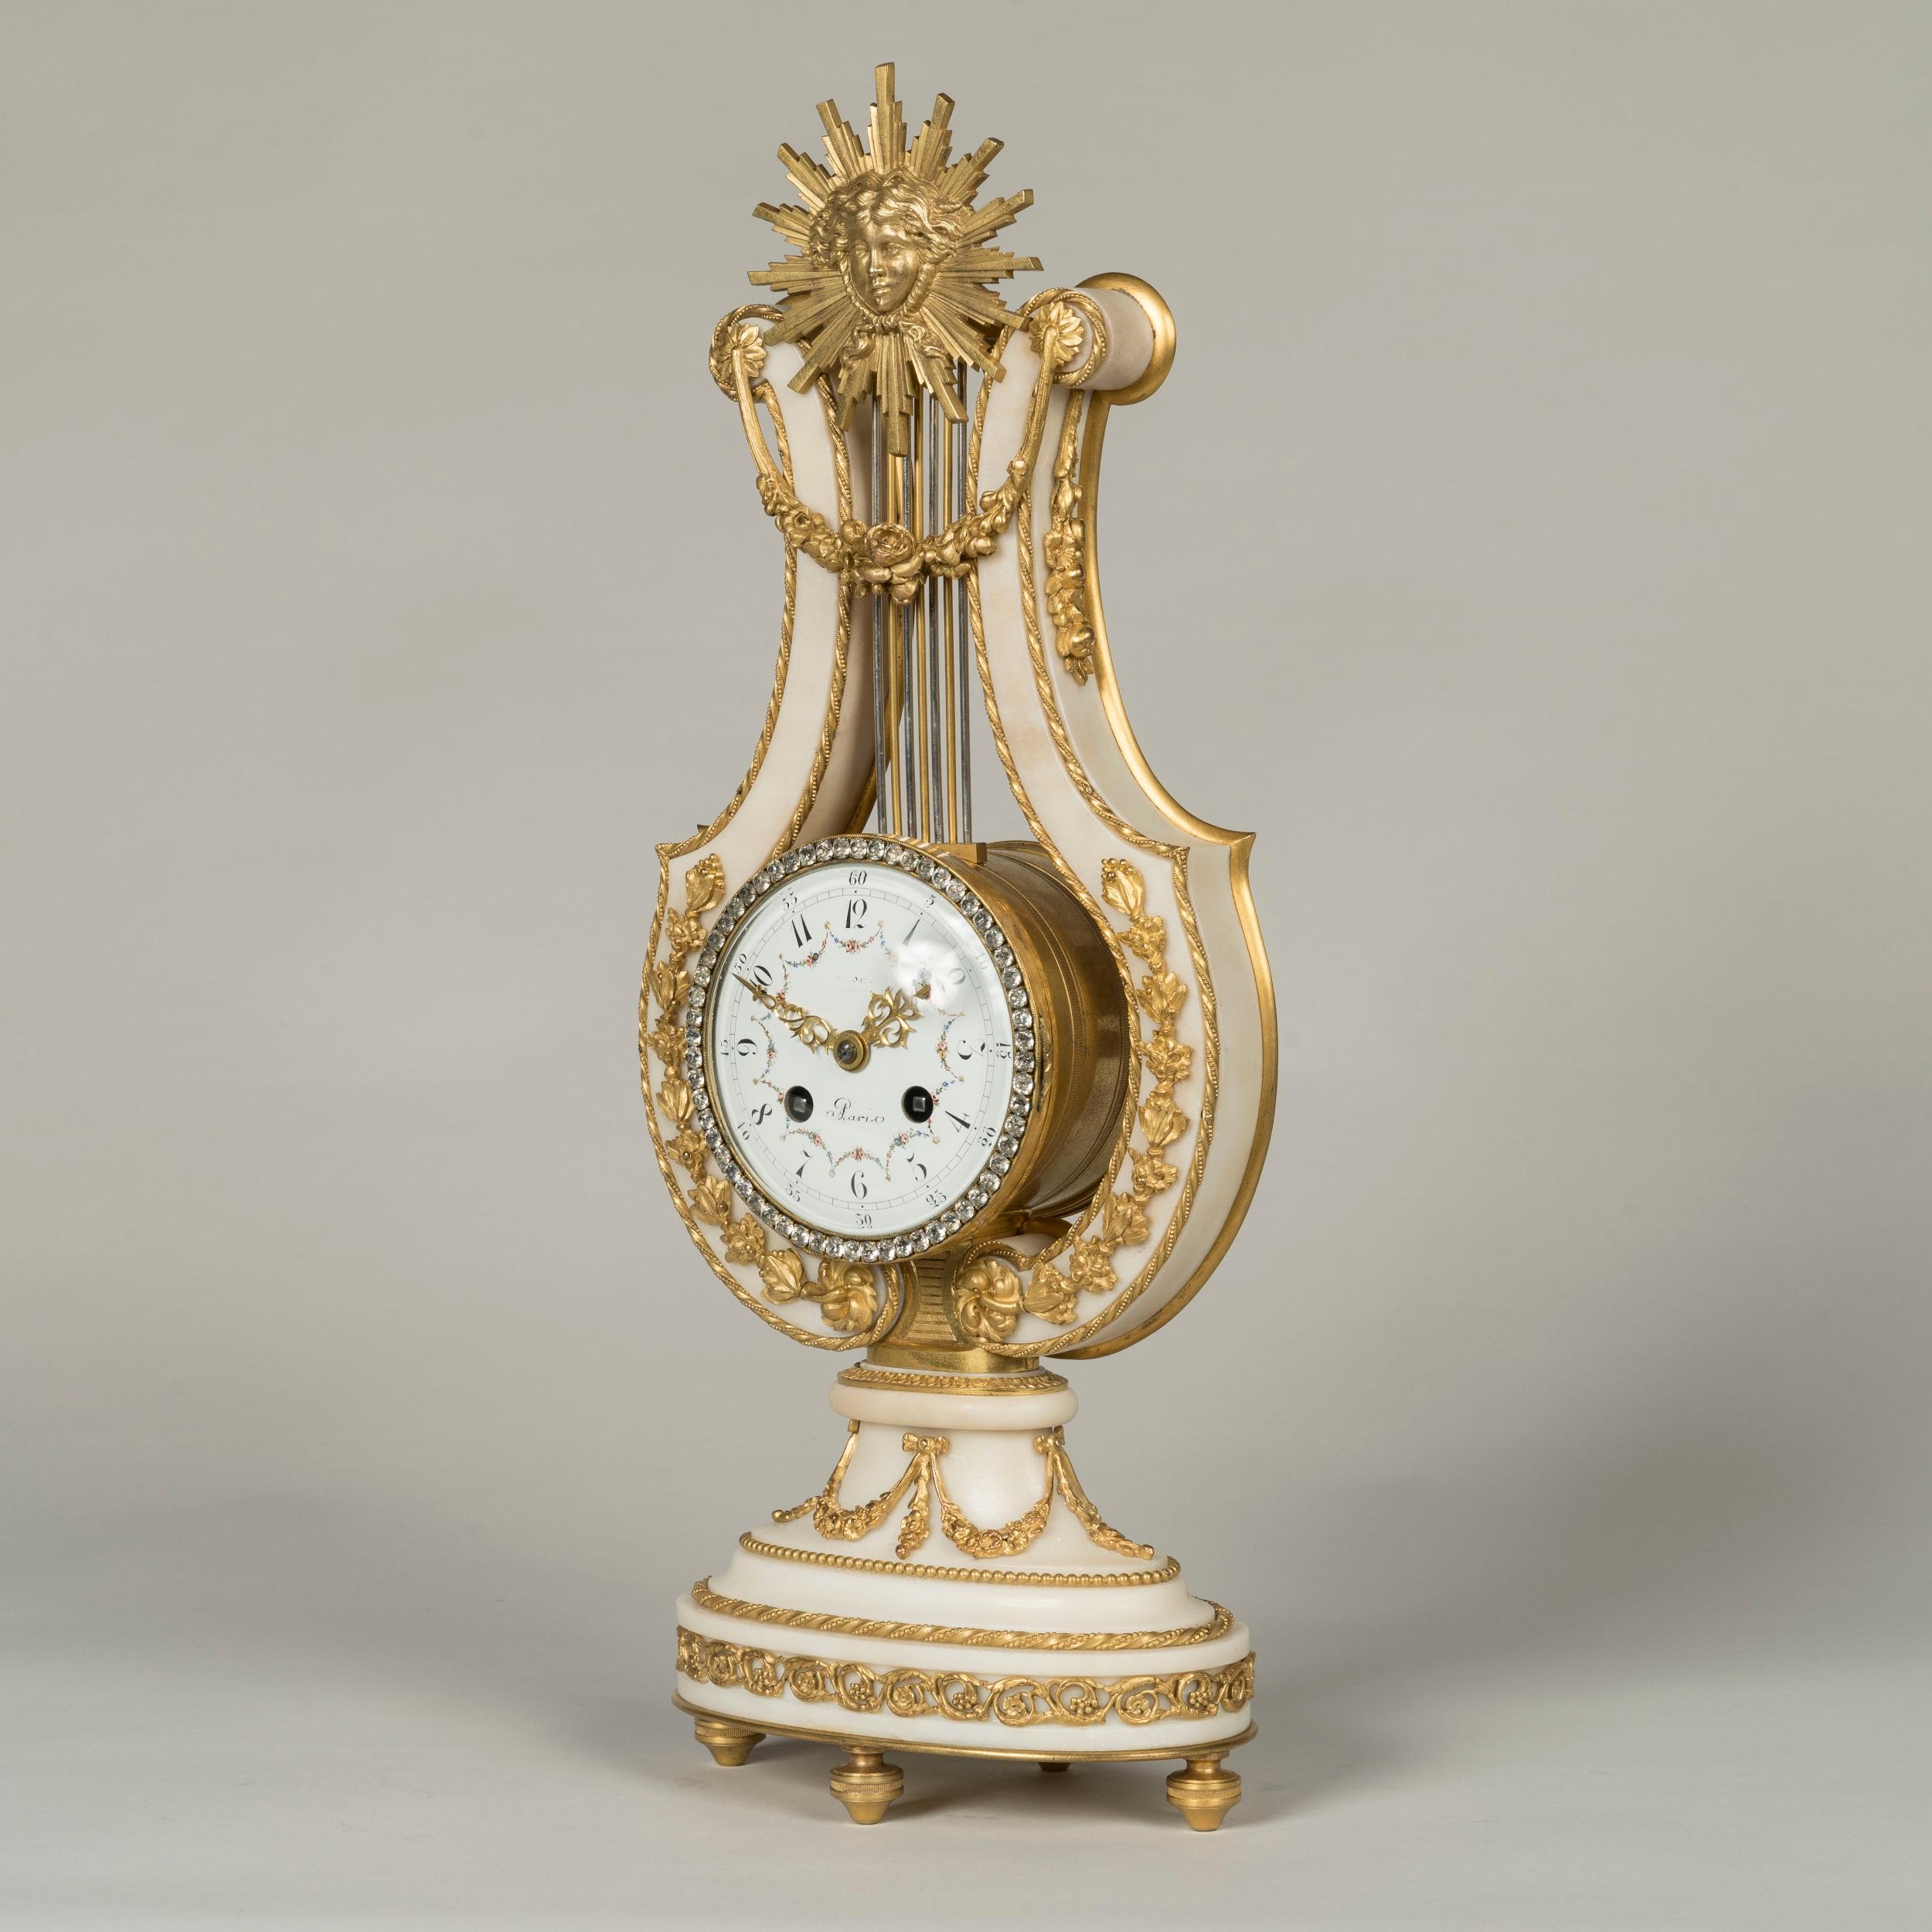 Eine französische Uhrengarnitur
im Louis XVI-Stil

Die Uhr und die dazugehörigen Kandelaber sind aus vergoldeter Bronze und italienischem Carrara-Marmor gefertigt; der Zeitmesser hat einen abgestuften elliptischen Sockel, der auf Tupie-Füßen ruht